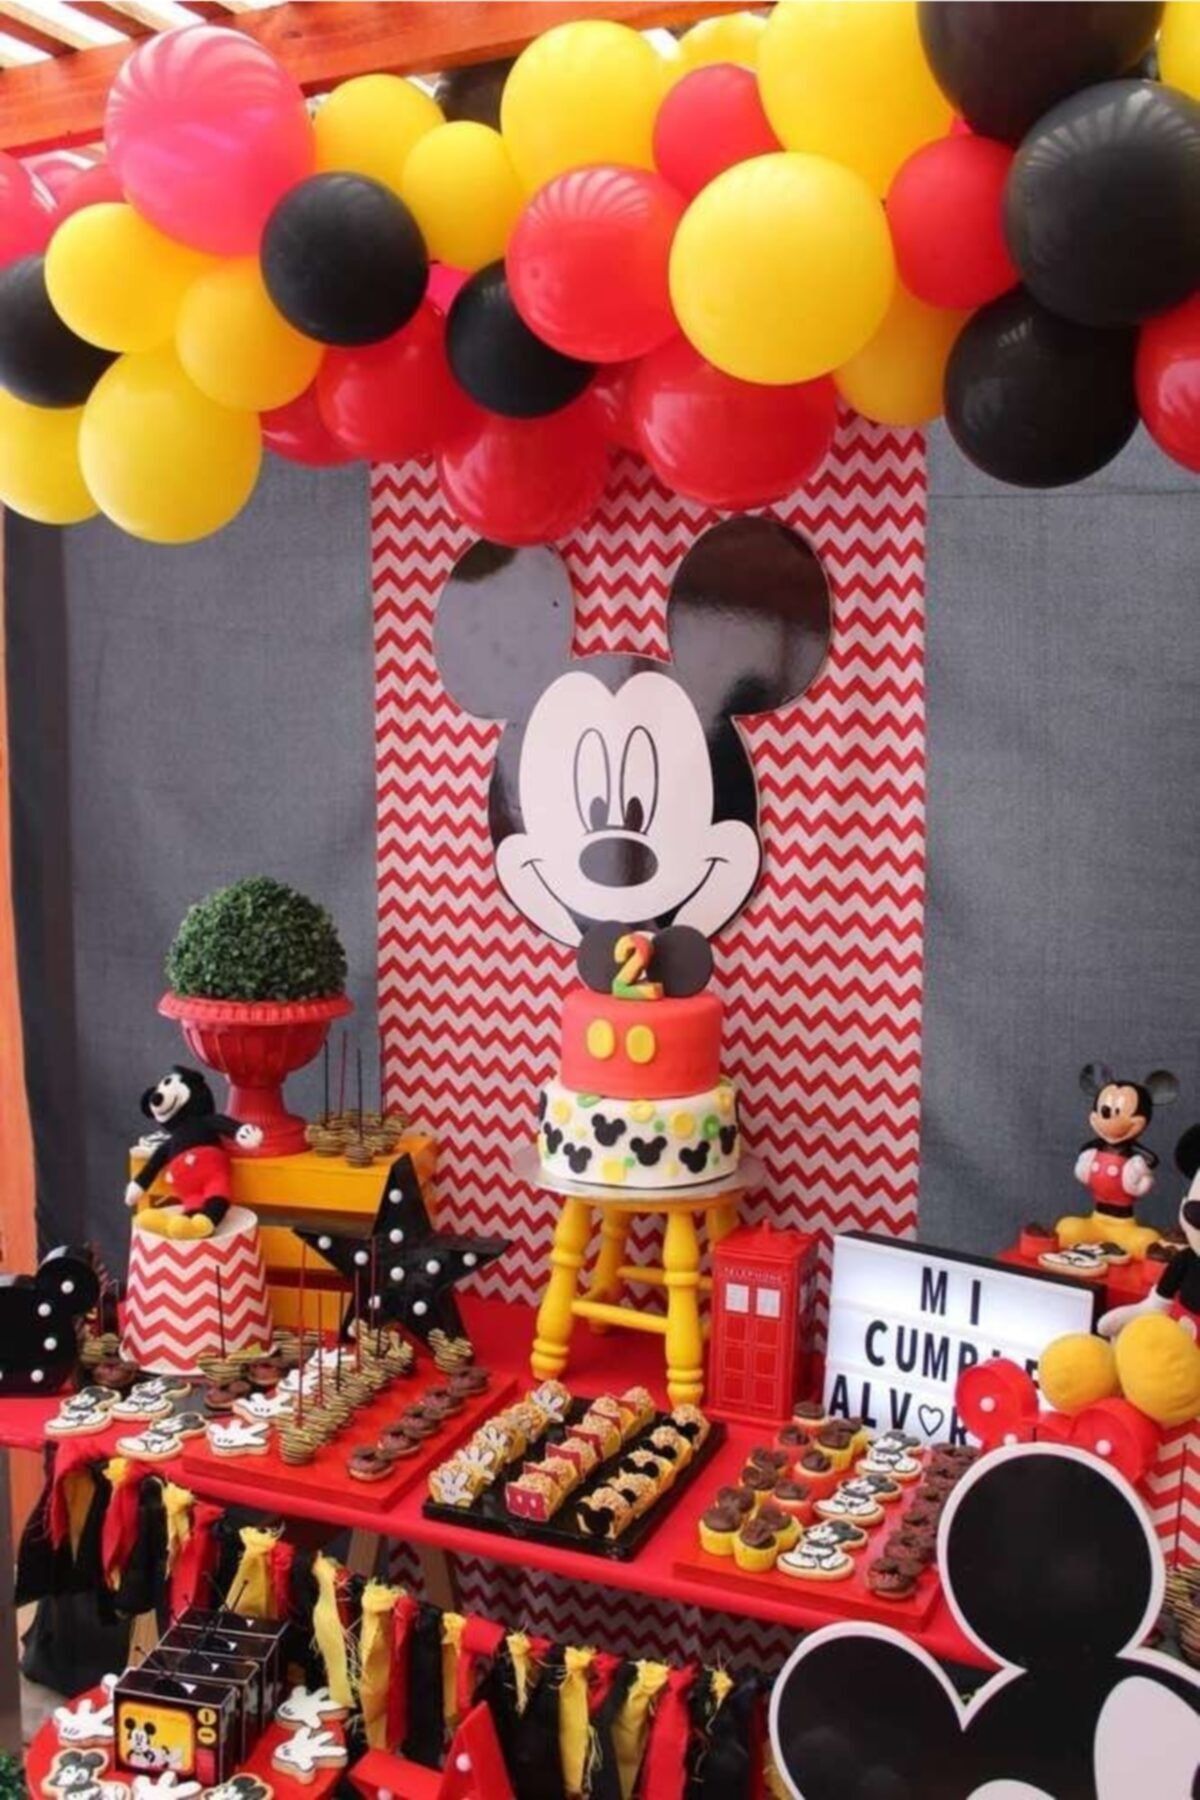 MERİ PARTİ 100 Adet Kırmızı Siyah Sarı Balon Ve Balon Zinciri Mıckey Mouse Konsept Balon Parti Süsleme